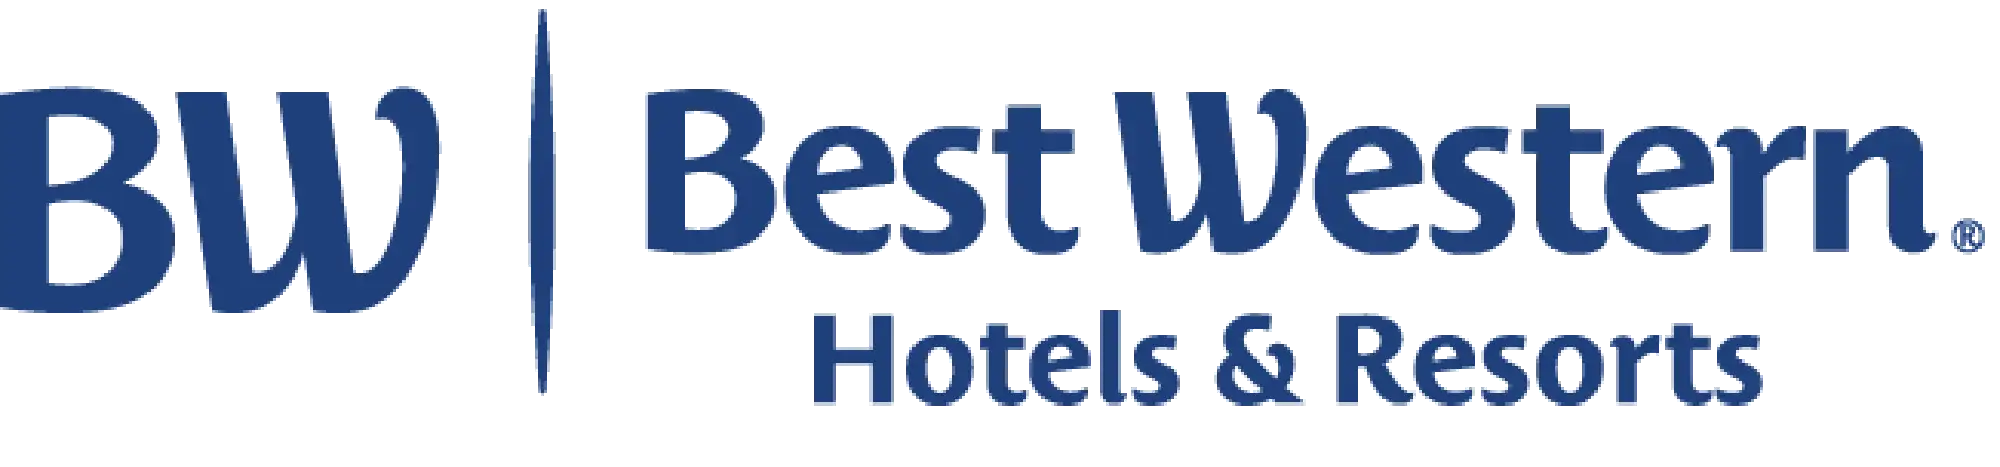 Best Western Hotels & Resort Logo in blauer Schrift